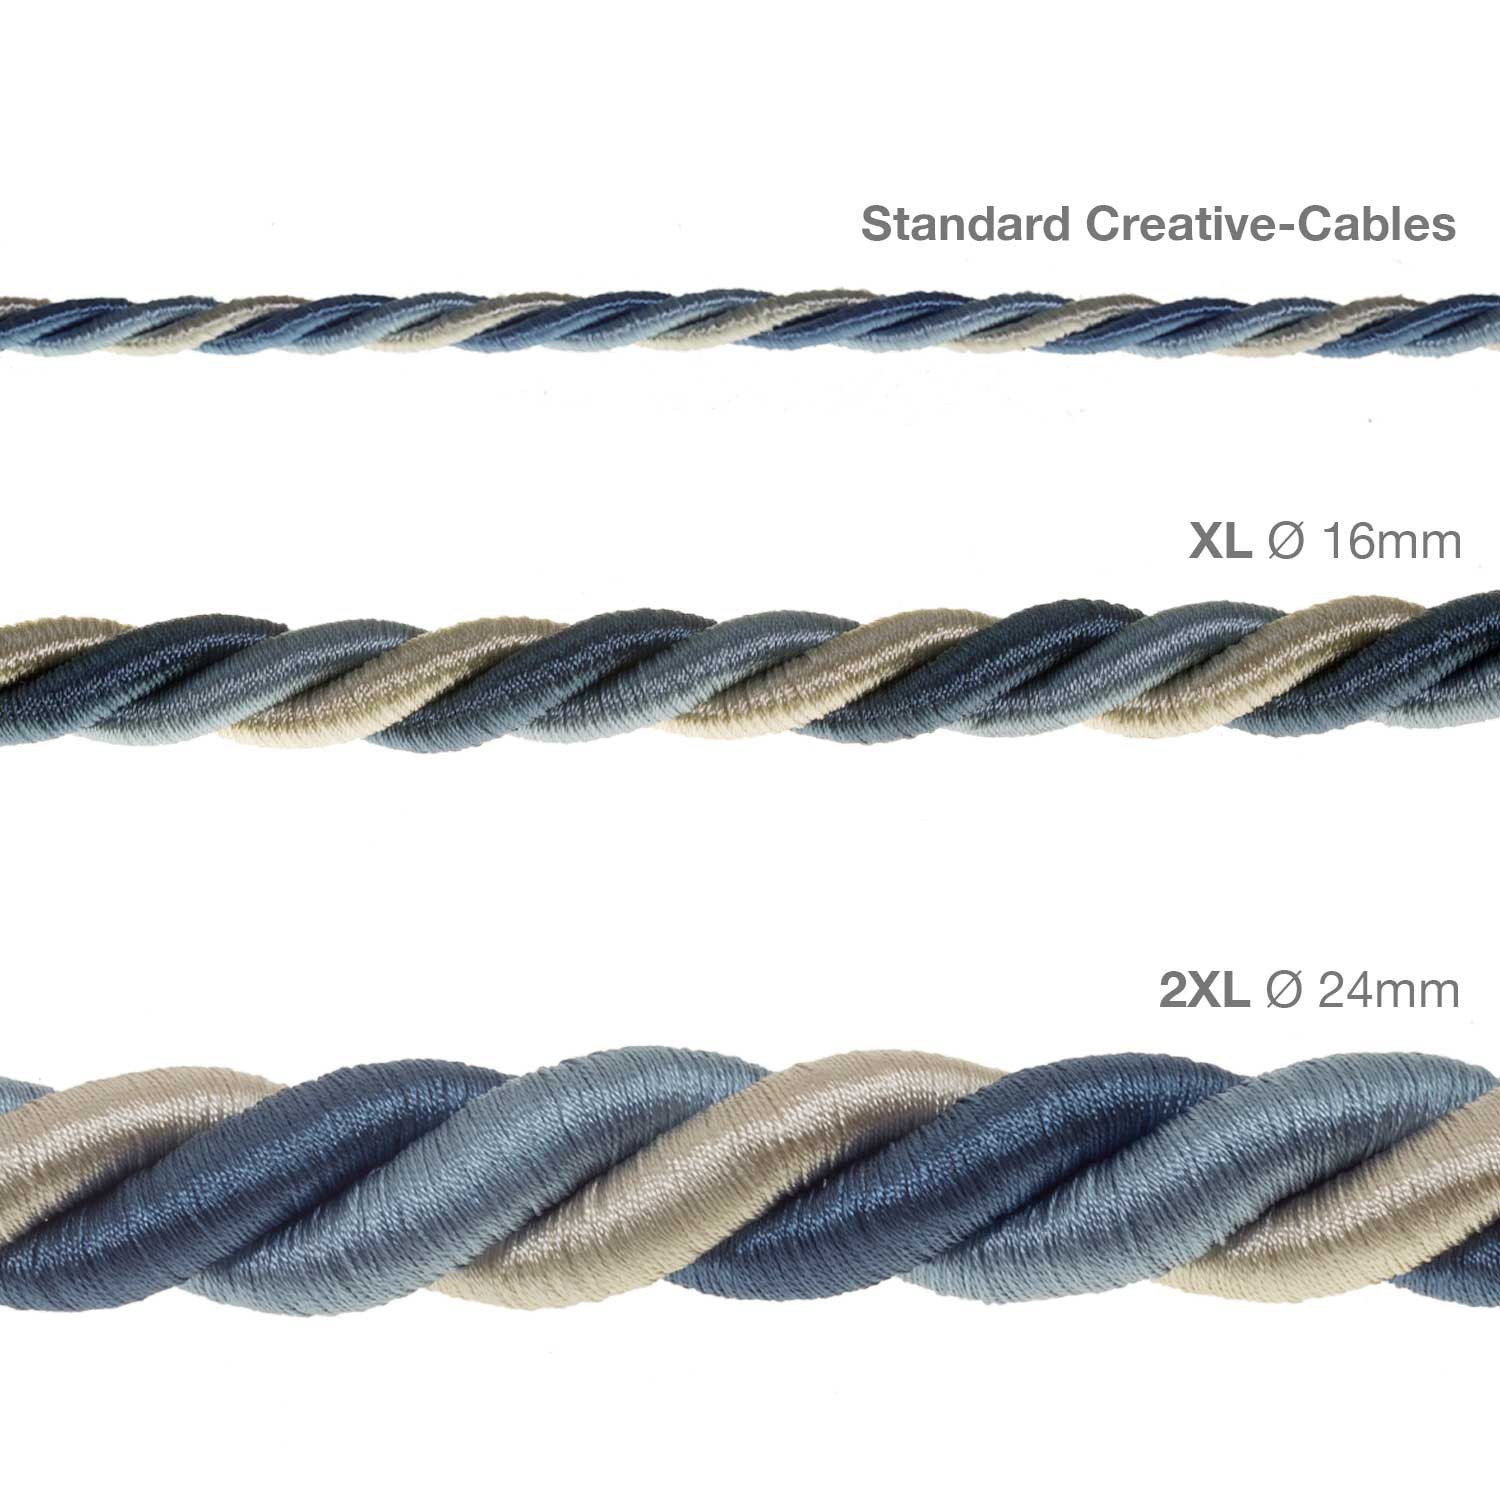 Cordón 2XL, cable eléctrico 3x0,75. Revestimiento de tejido lucído Bernadotte. Diámetro: 24mm.